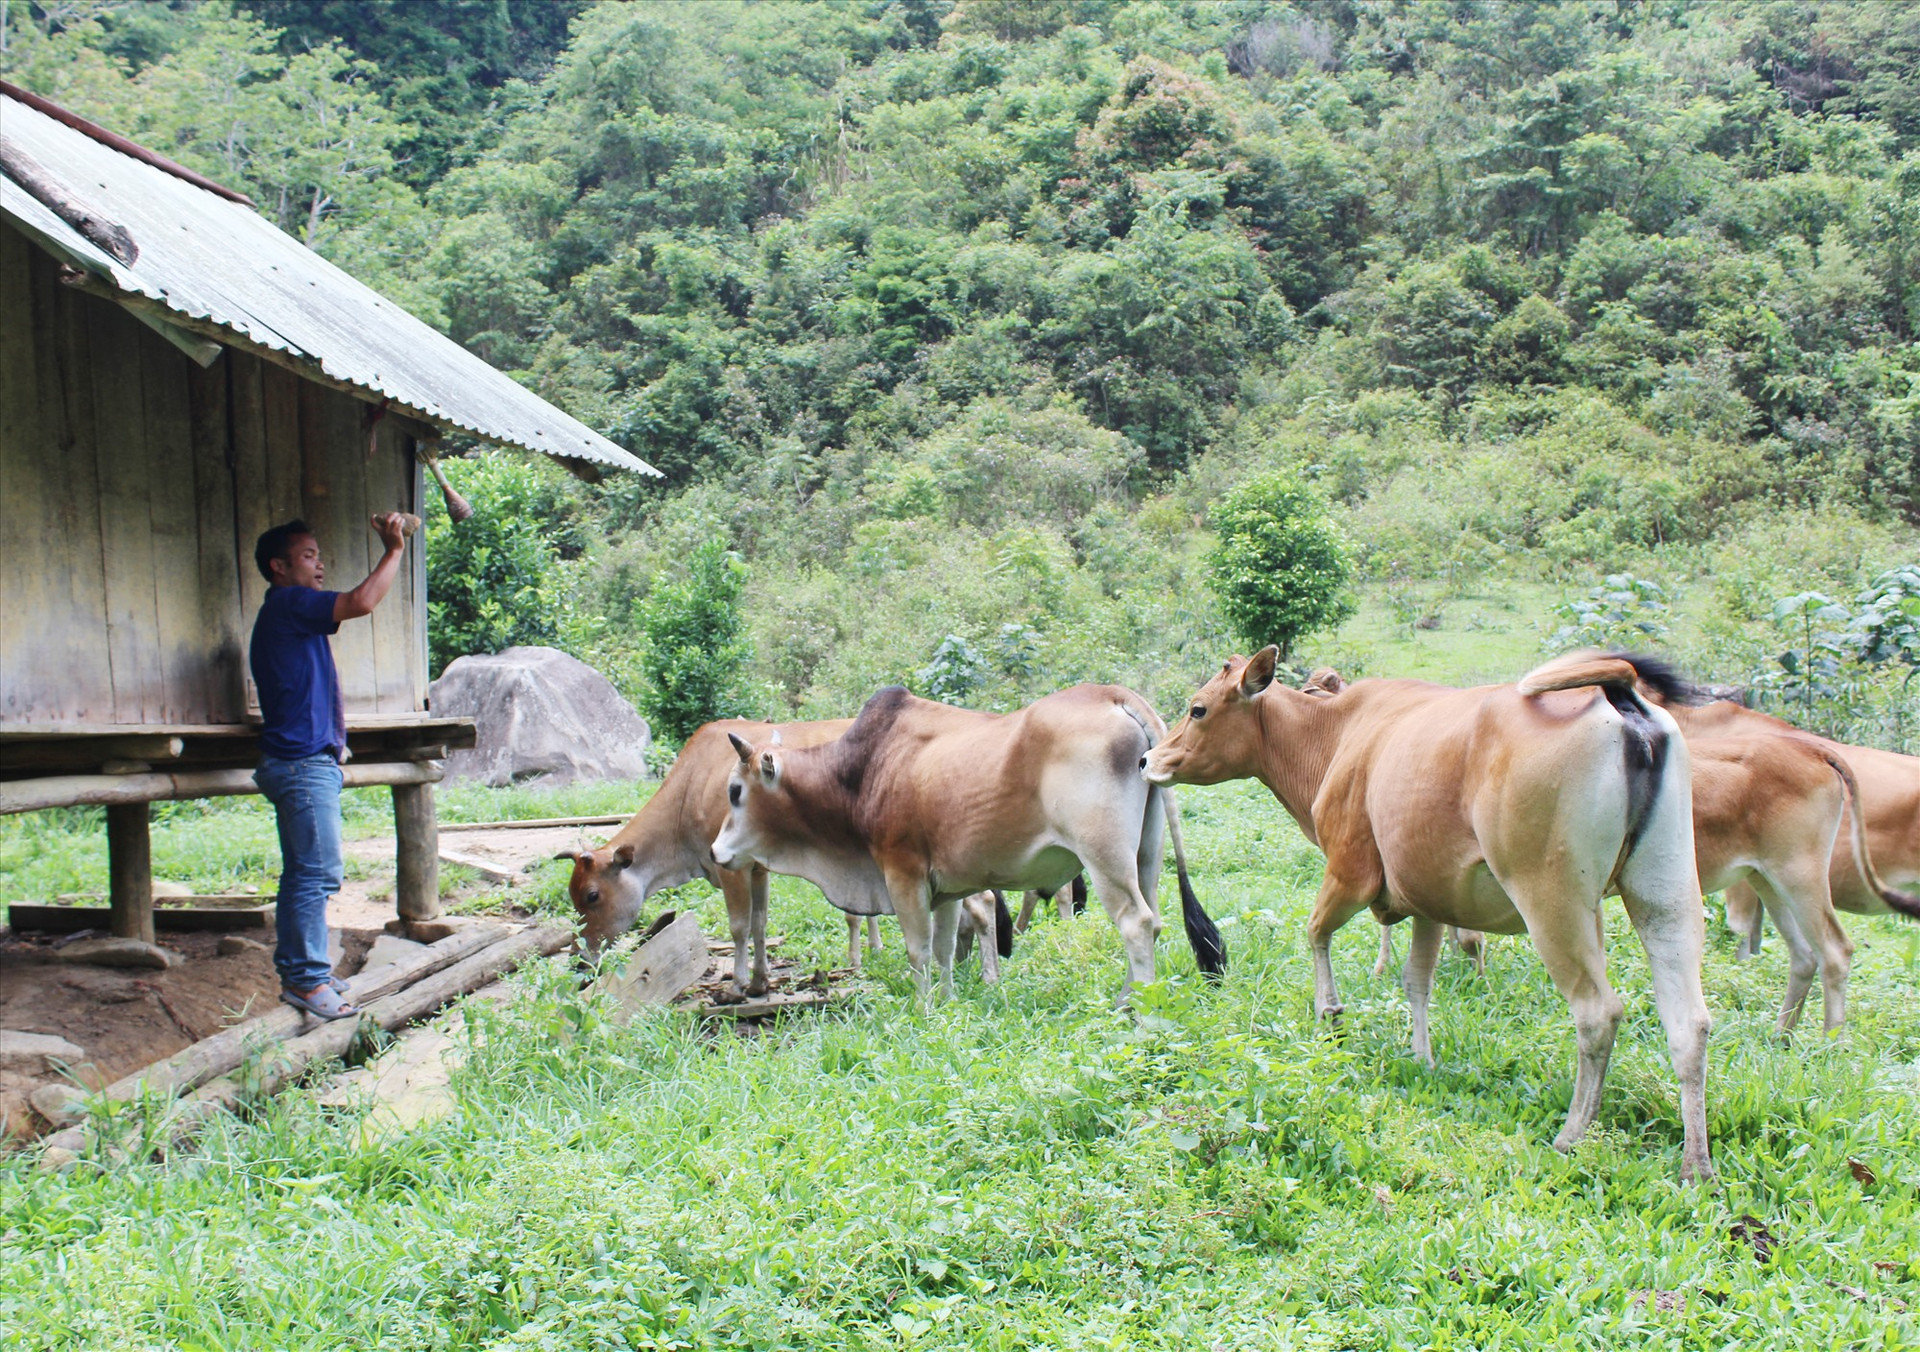 Chăn nuôi khoanh vùng kết hợp với làm chuồng trại cho trâu bò trú vào mùa đông là mô hình chăn nuôi hiệu quả ở các xã vùng cao Tây Giang. Ảnh: Đ.H